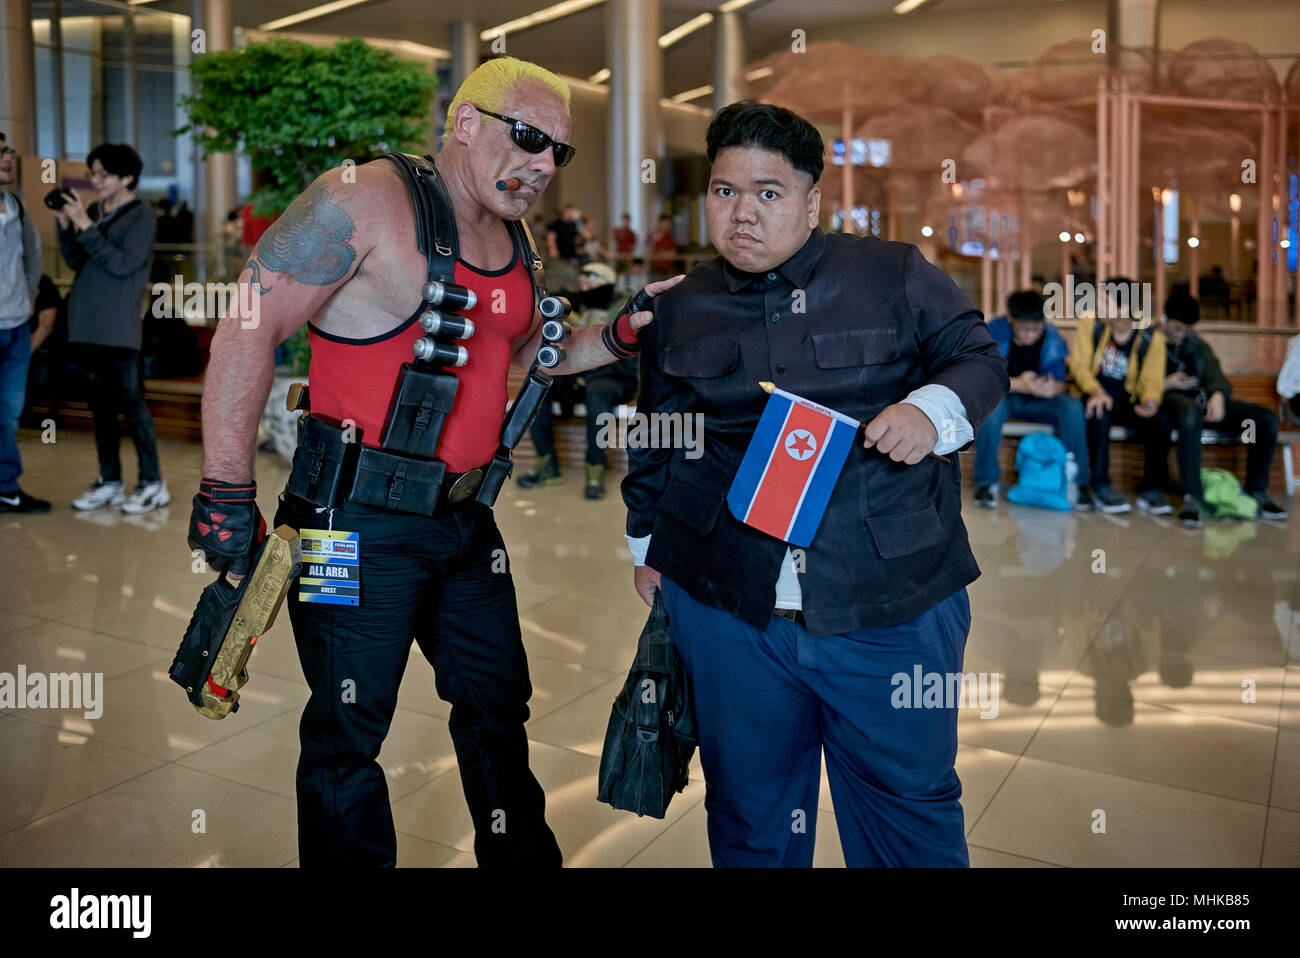 Comic Con et événement cosplay costume, Bangkok Thaïlande Asie du sud-est Banque D'Images